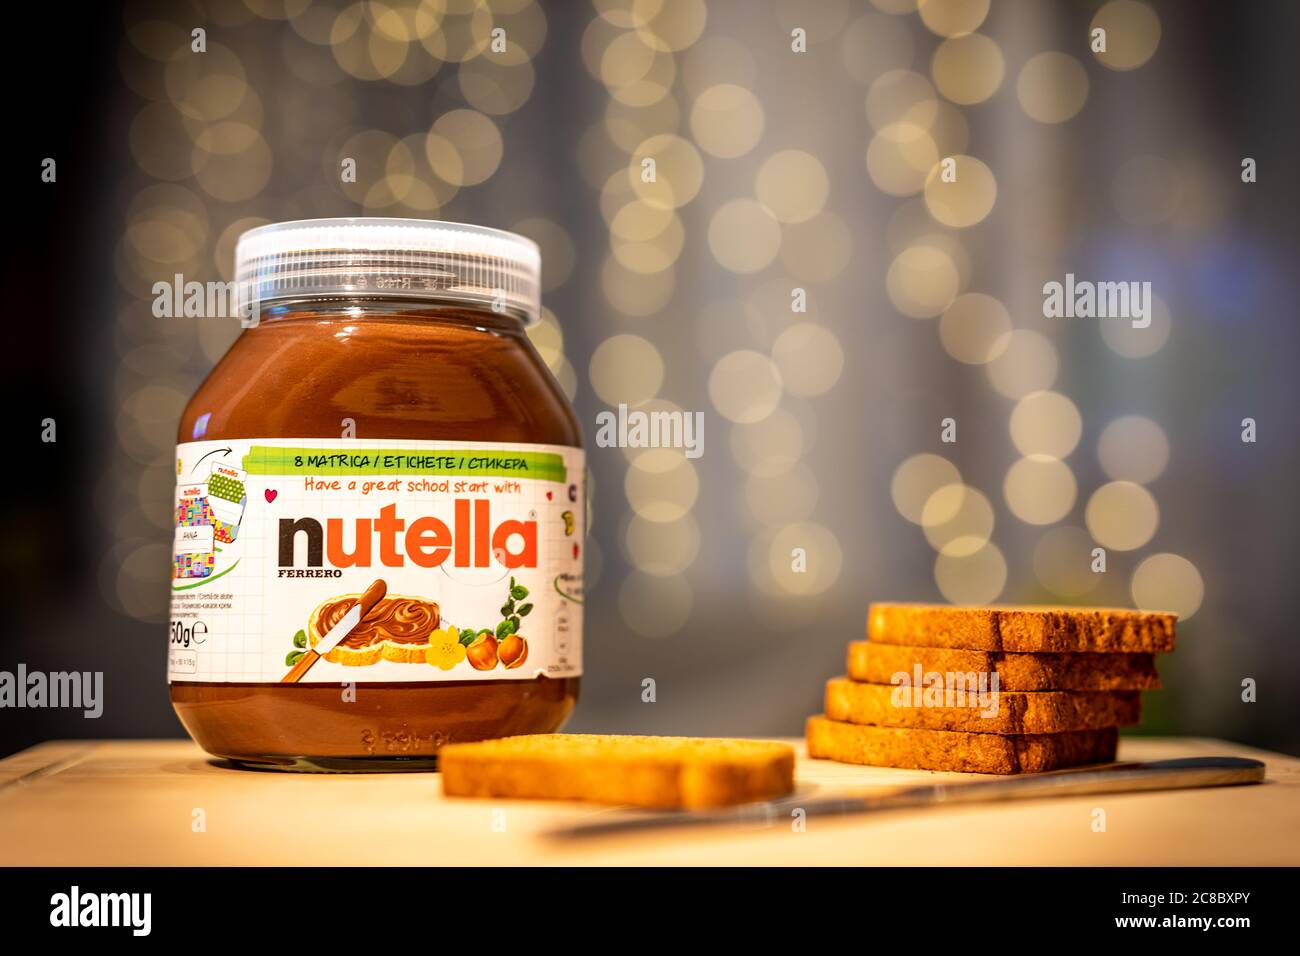 09.10.19 Budapest: Nutella Haselnuss-Brotdose. Nutella ist eine Marke von gesüßten Haselnuss-Kakao Aufstrich von der italienischen Firma Ferrero hergestellt. Stockfoto